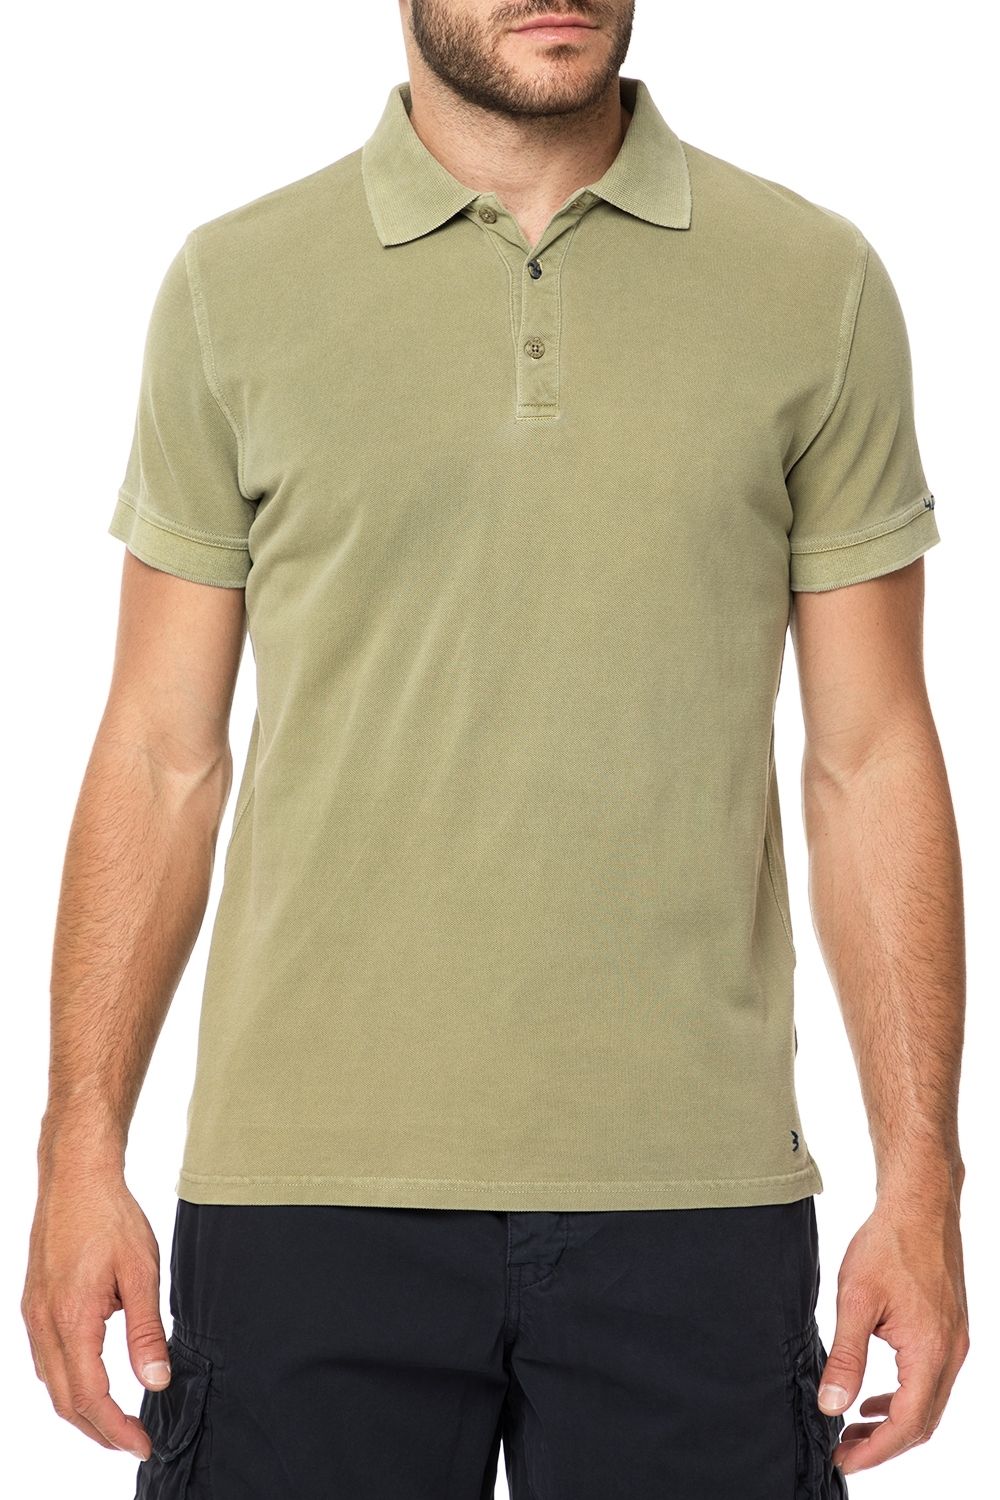 Ανδρικά/Ρούχα/Μπλούζες/Πόλο 40-WEFT - Ανδρική polo μπλούζα 40-WEFT SEBES πράσινη